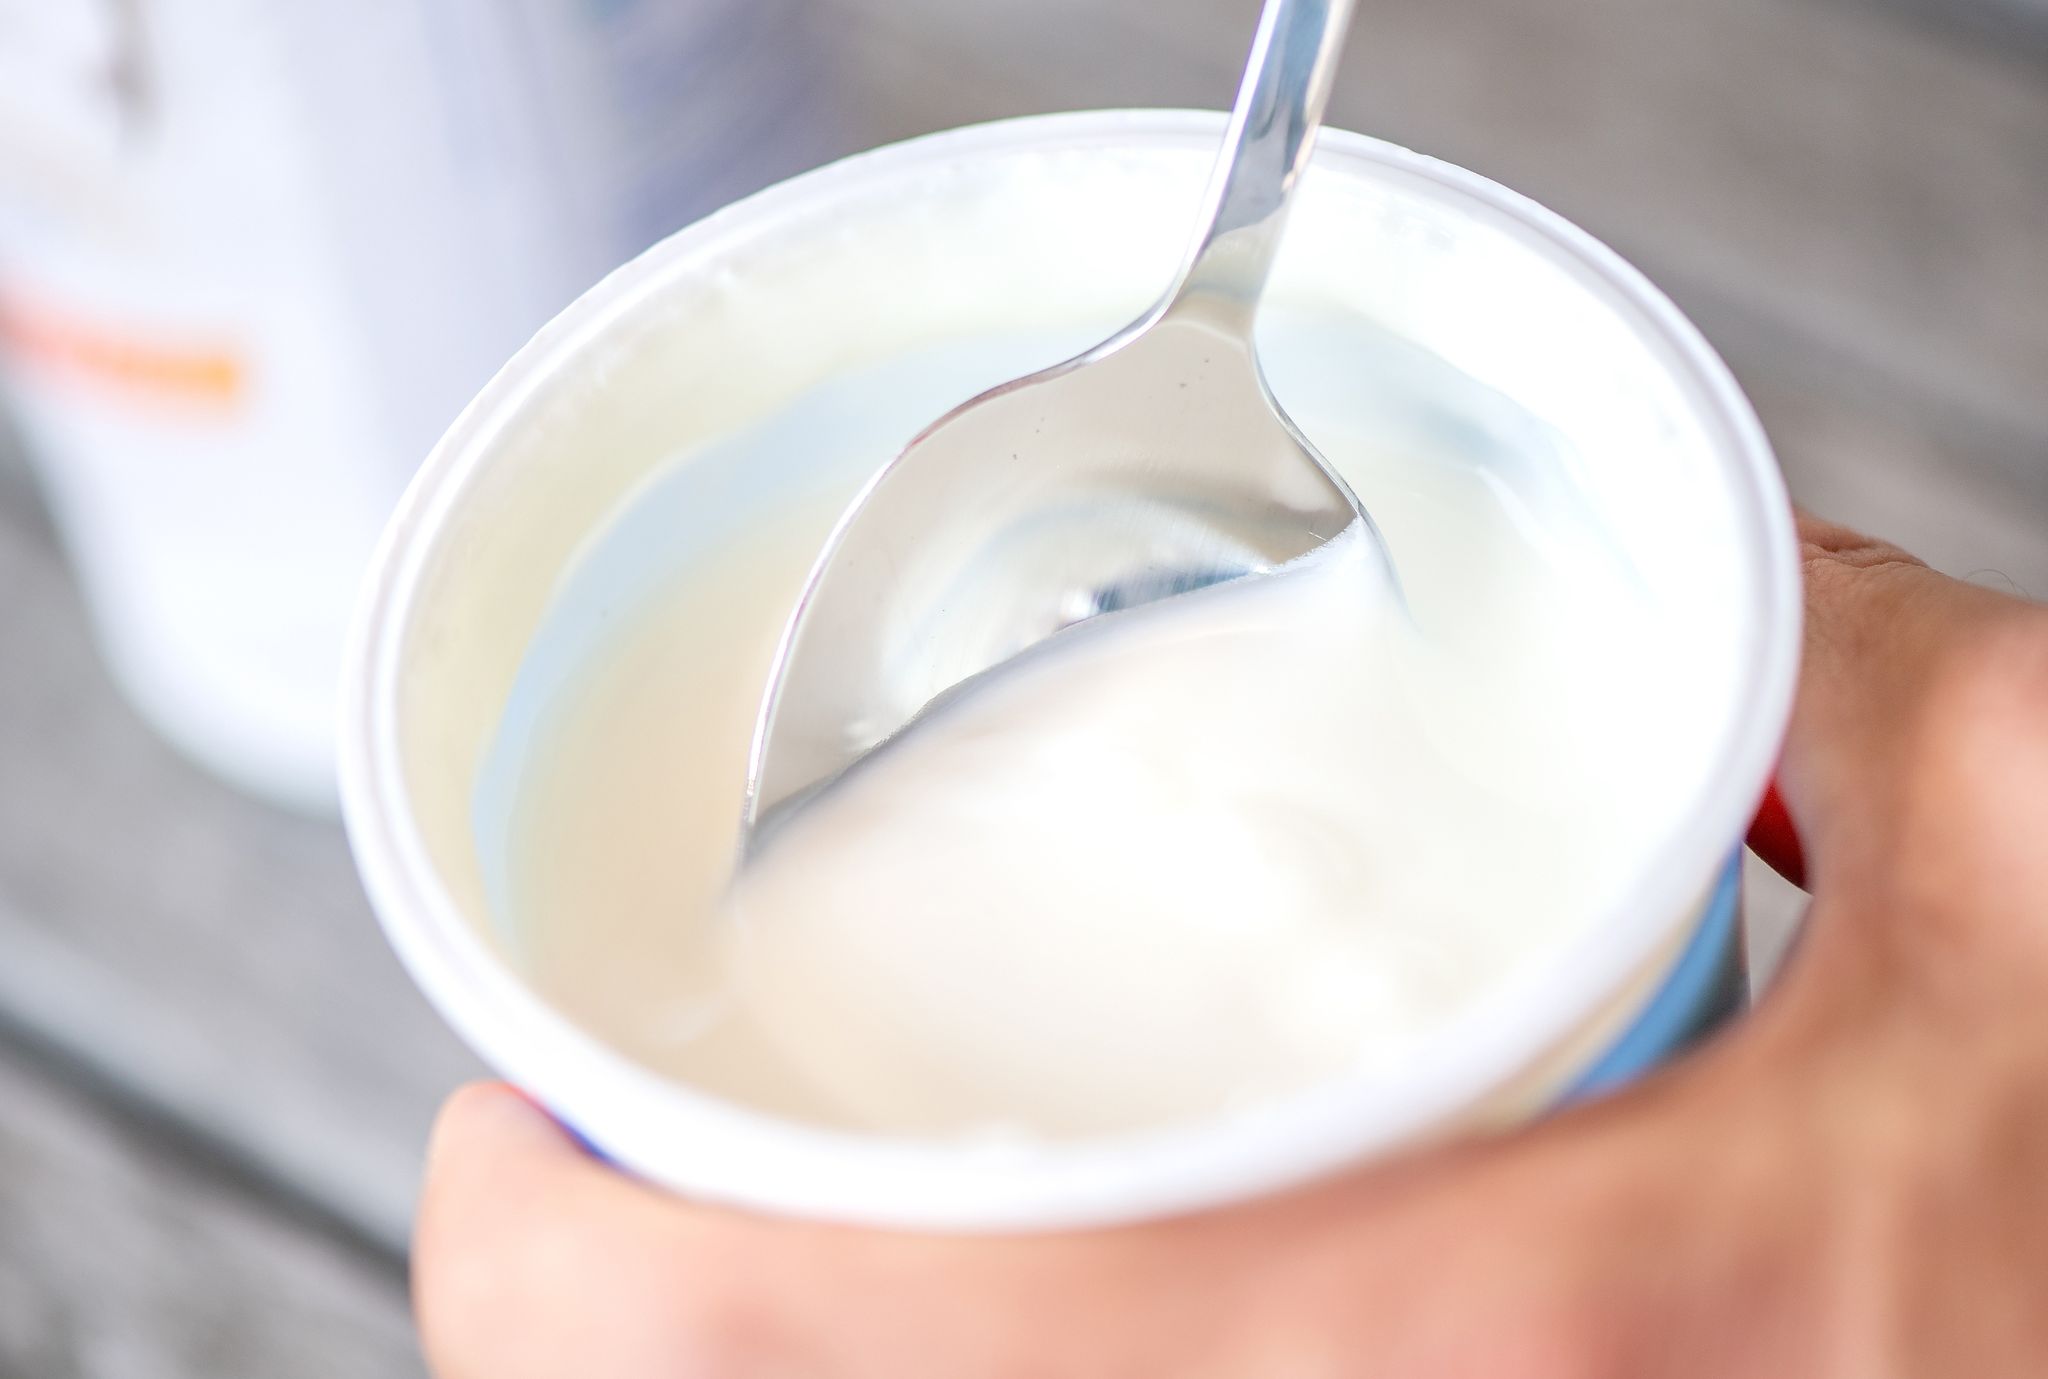 Naturjoghurt ist zuckerarm, aber nicht zuckerfrei, da der natürliche Milchzucker während der Fermentierung in Milchsäure umgewandelt wird. Ein Rest Milchzucker bleibt jedoch enthalten.